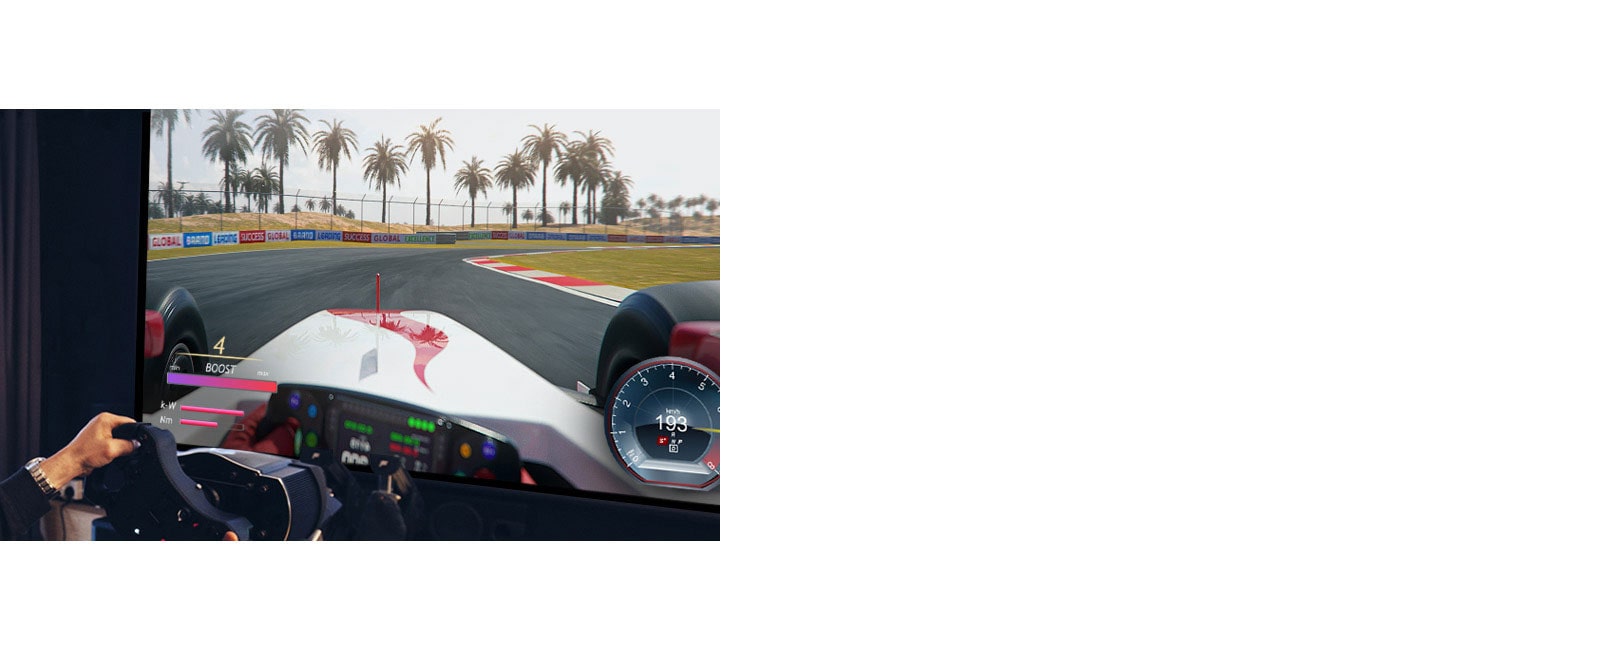 صورة مقربة للاعب يحمل عجلة سباق في إحدى ألعاب السباقات على شاشة التلفزيون.